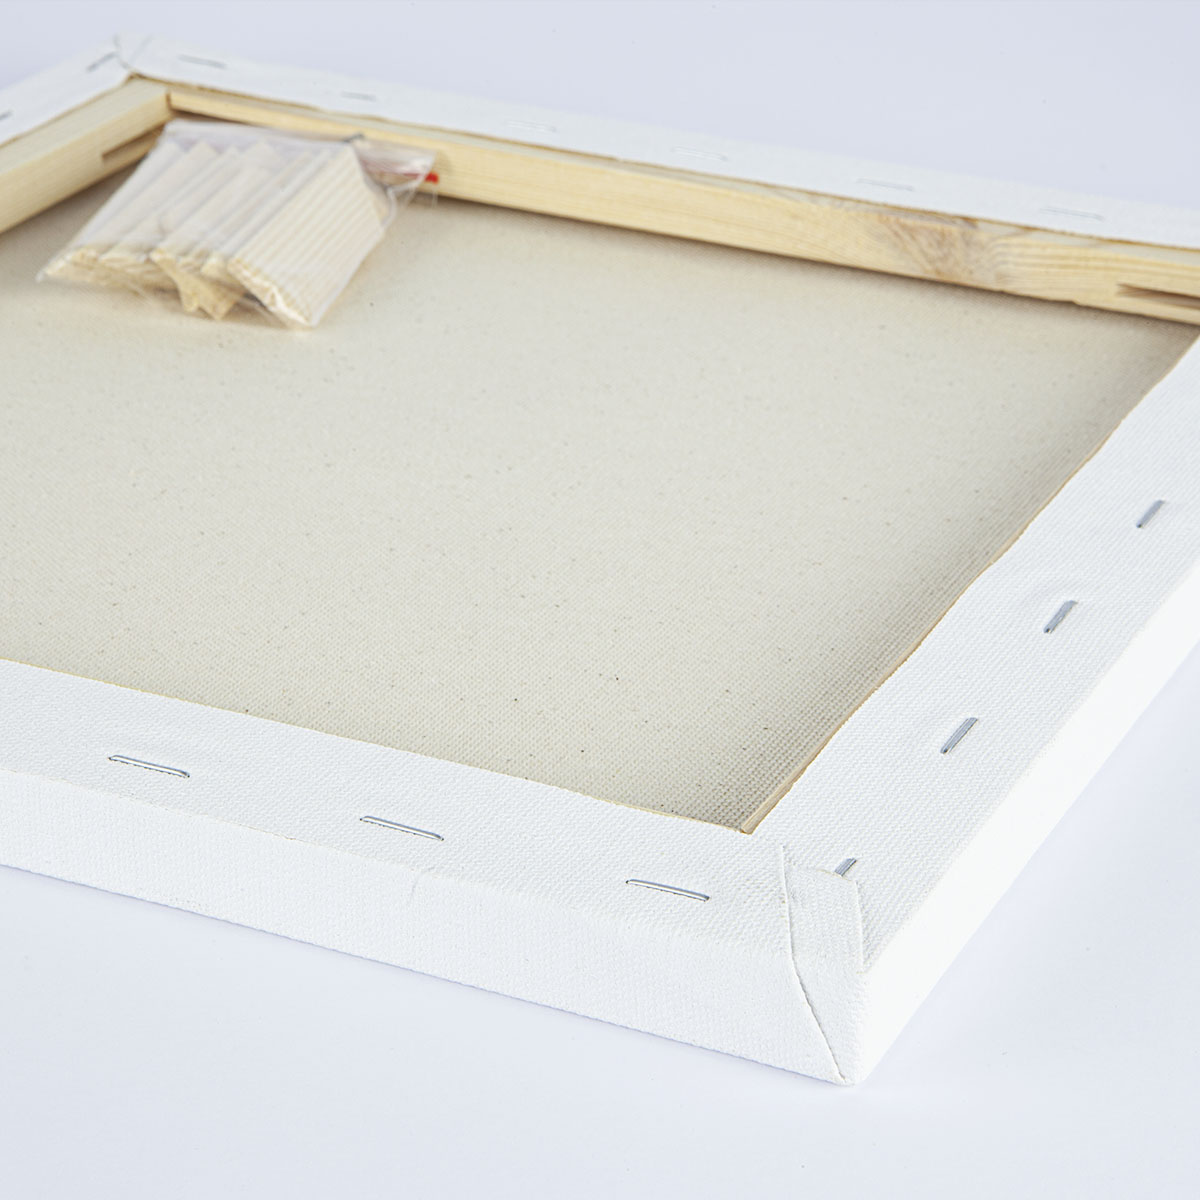 ESTINK 40cm Round Canvas Professional 4 Layer Structure Cotton